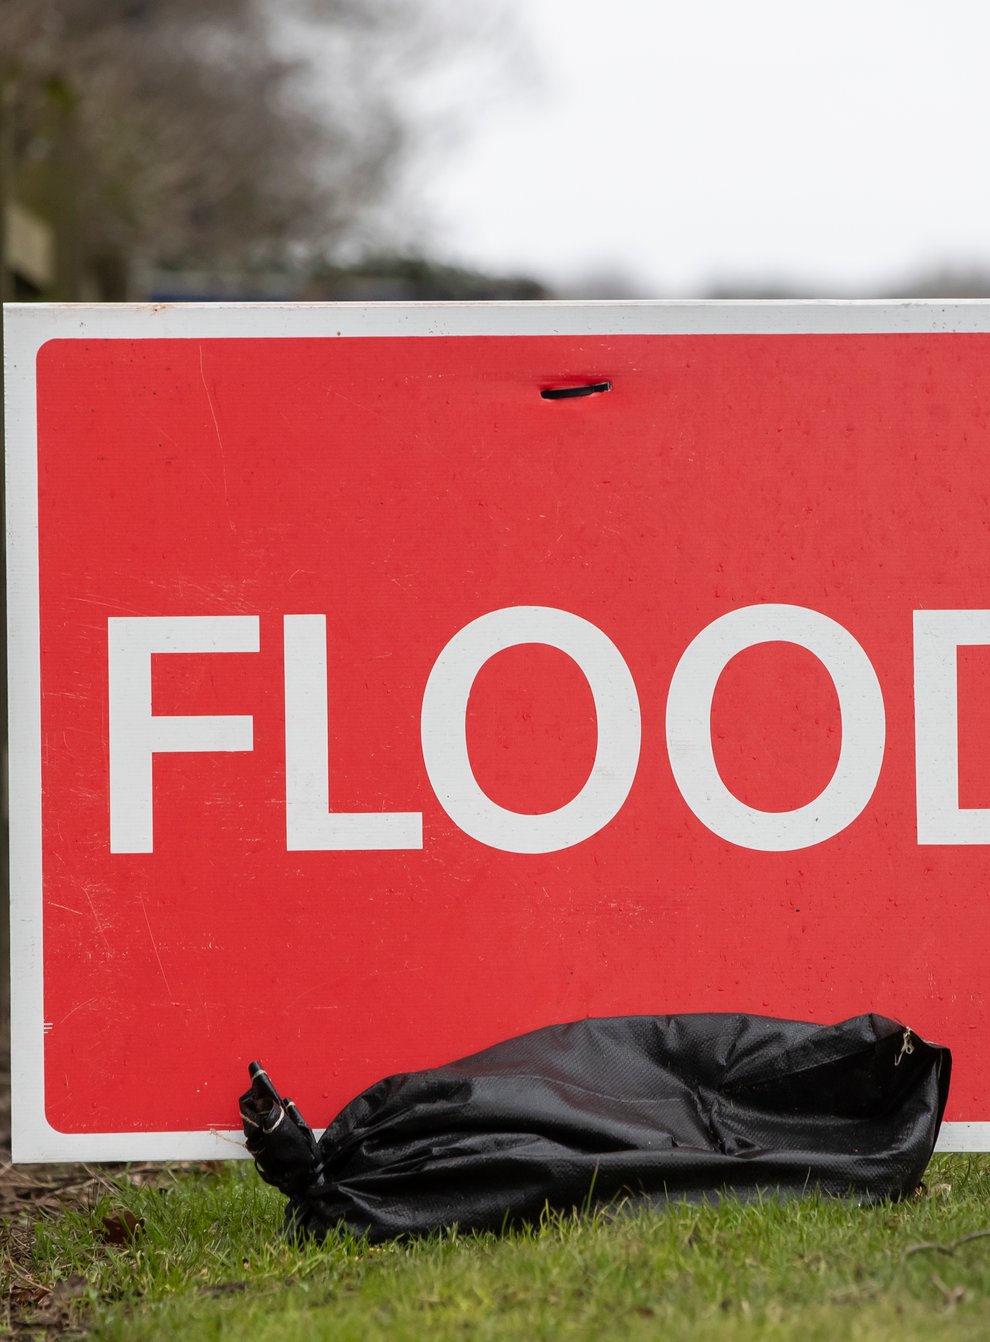 A flood sign